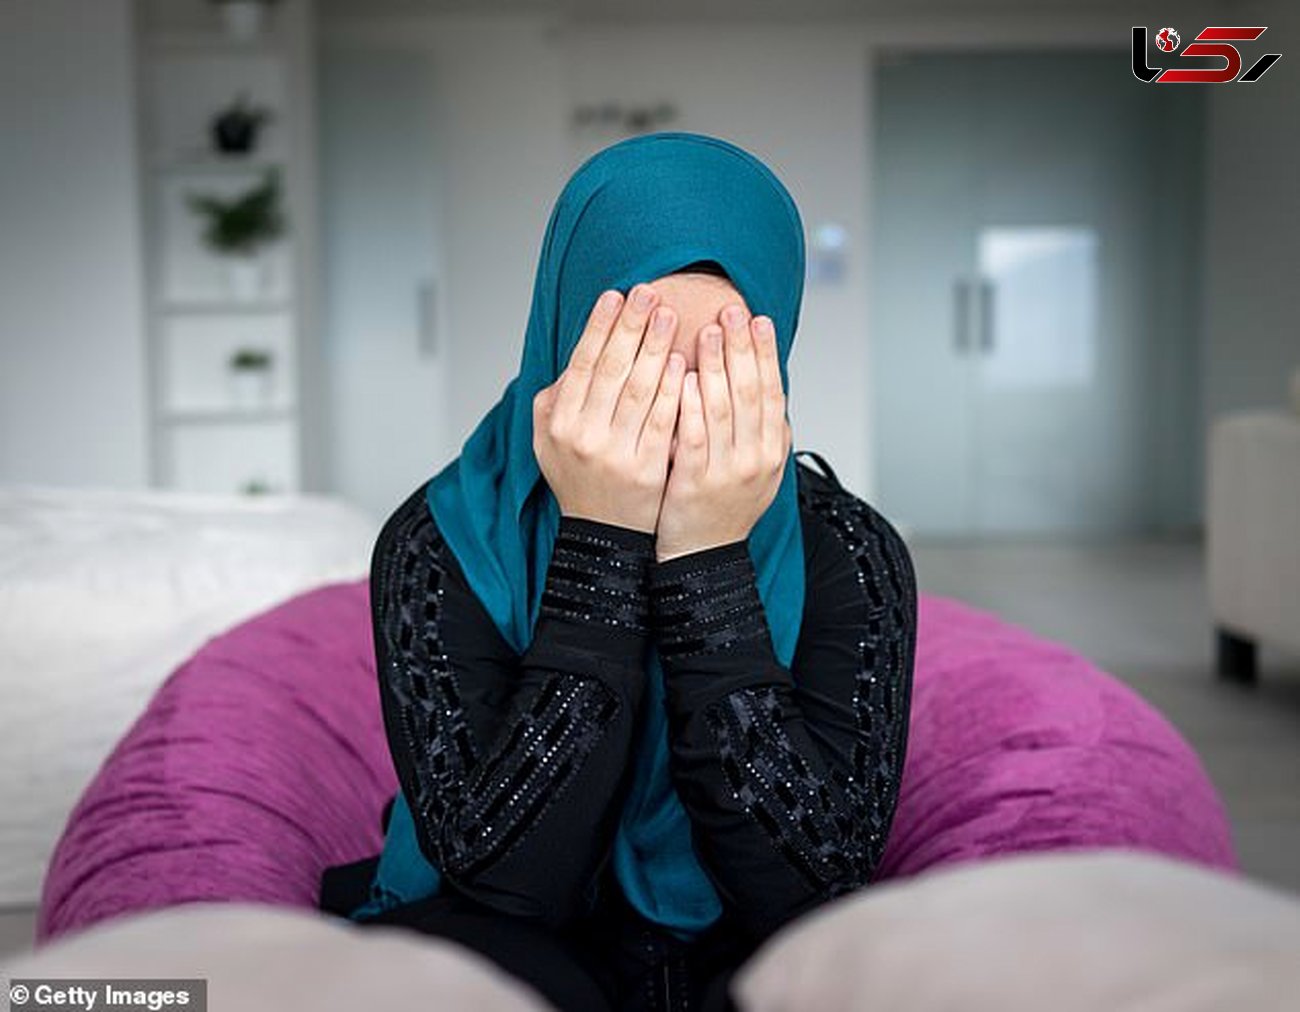 عروس انگلیسی داعشی: بلای که بر سرم در مدرسه آورند باعث شد جذبم داعش شوم+ عکس
